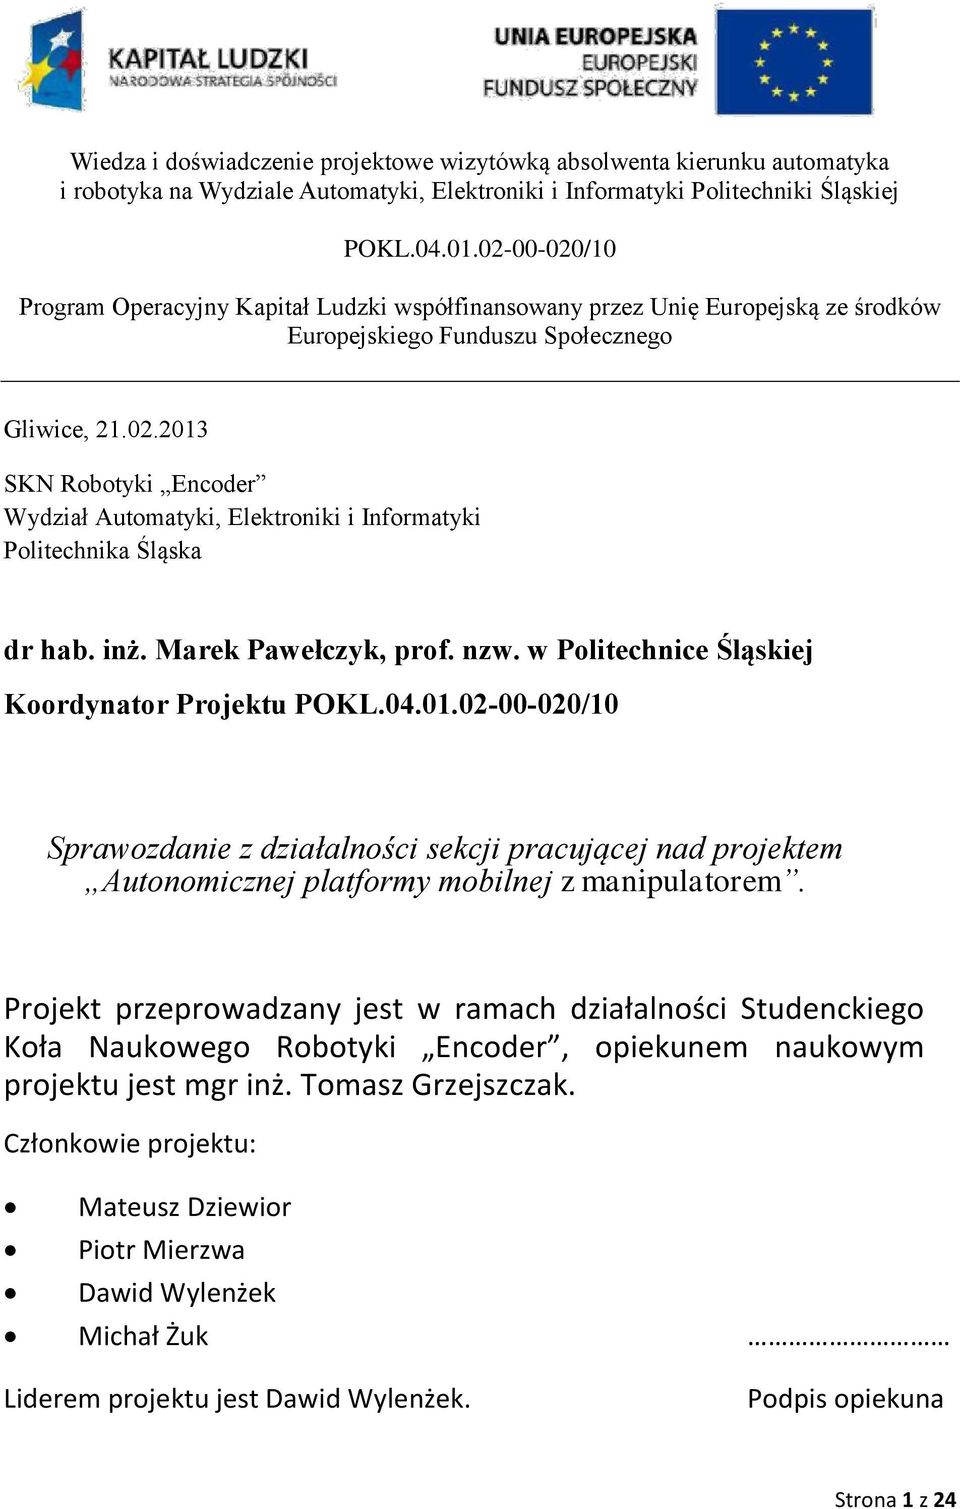 inż. Marek Pawełczyk, prof. nzw. w Politechnice Śląskiej Koordynator Projektu POKL.04.01.